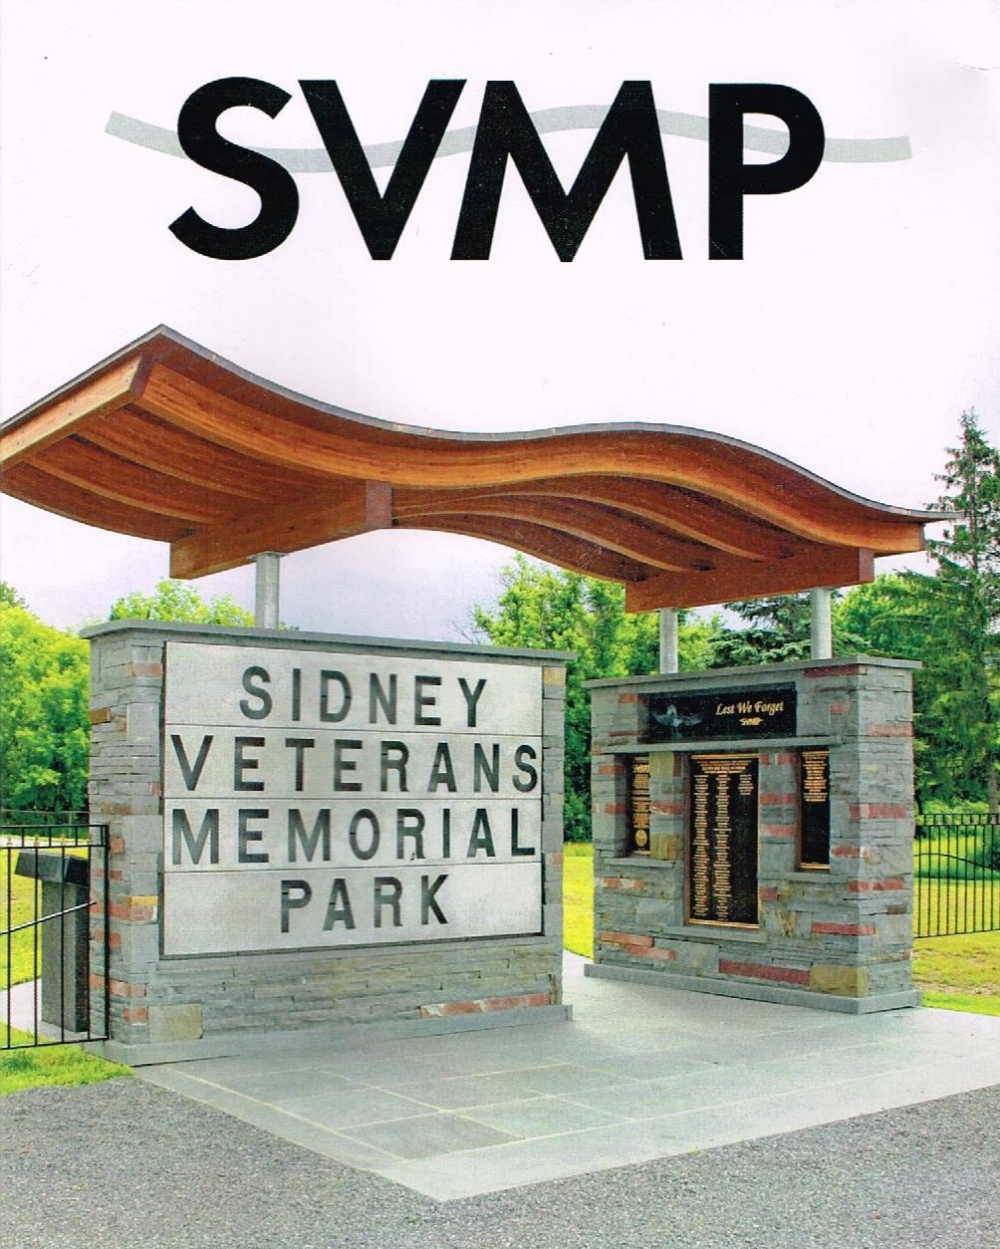 Sidney Veterans Memorial Park